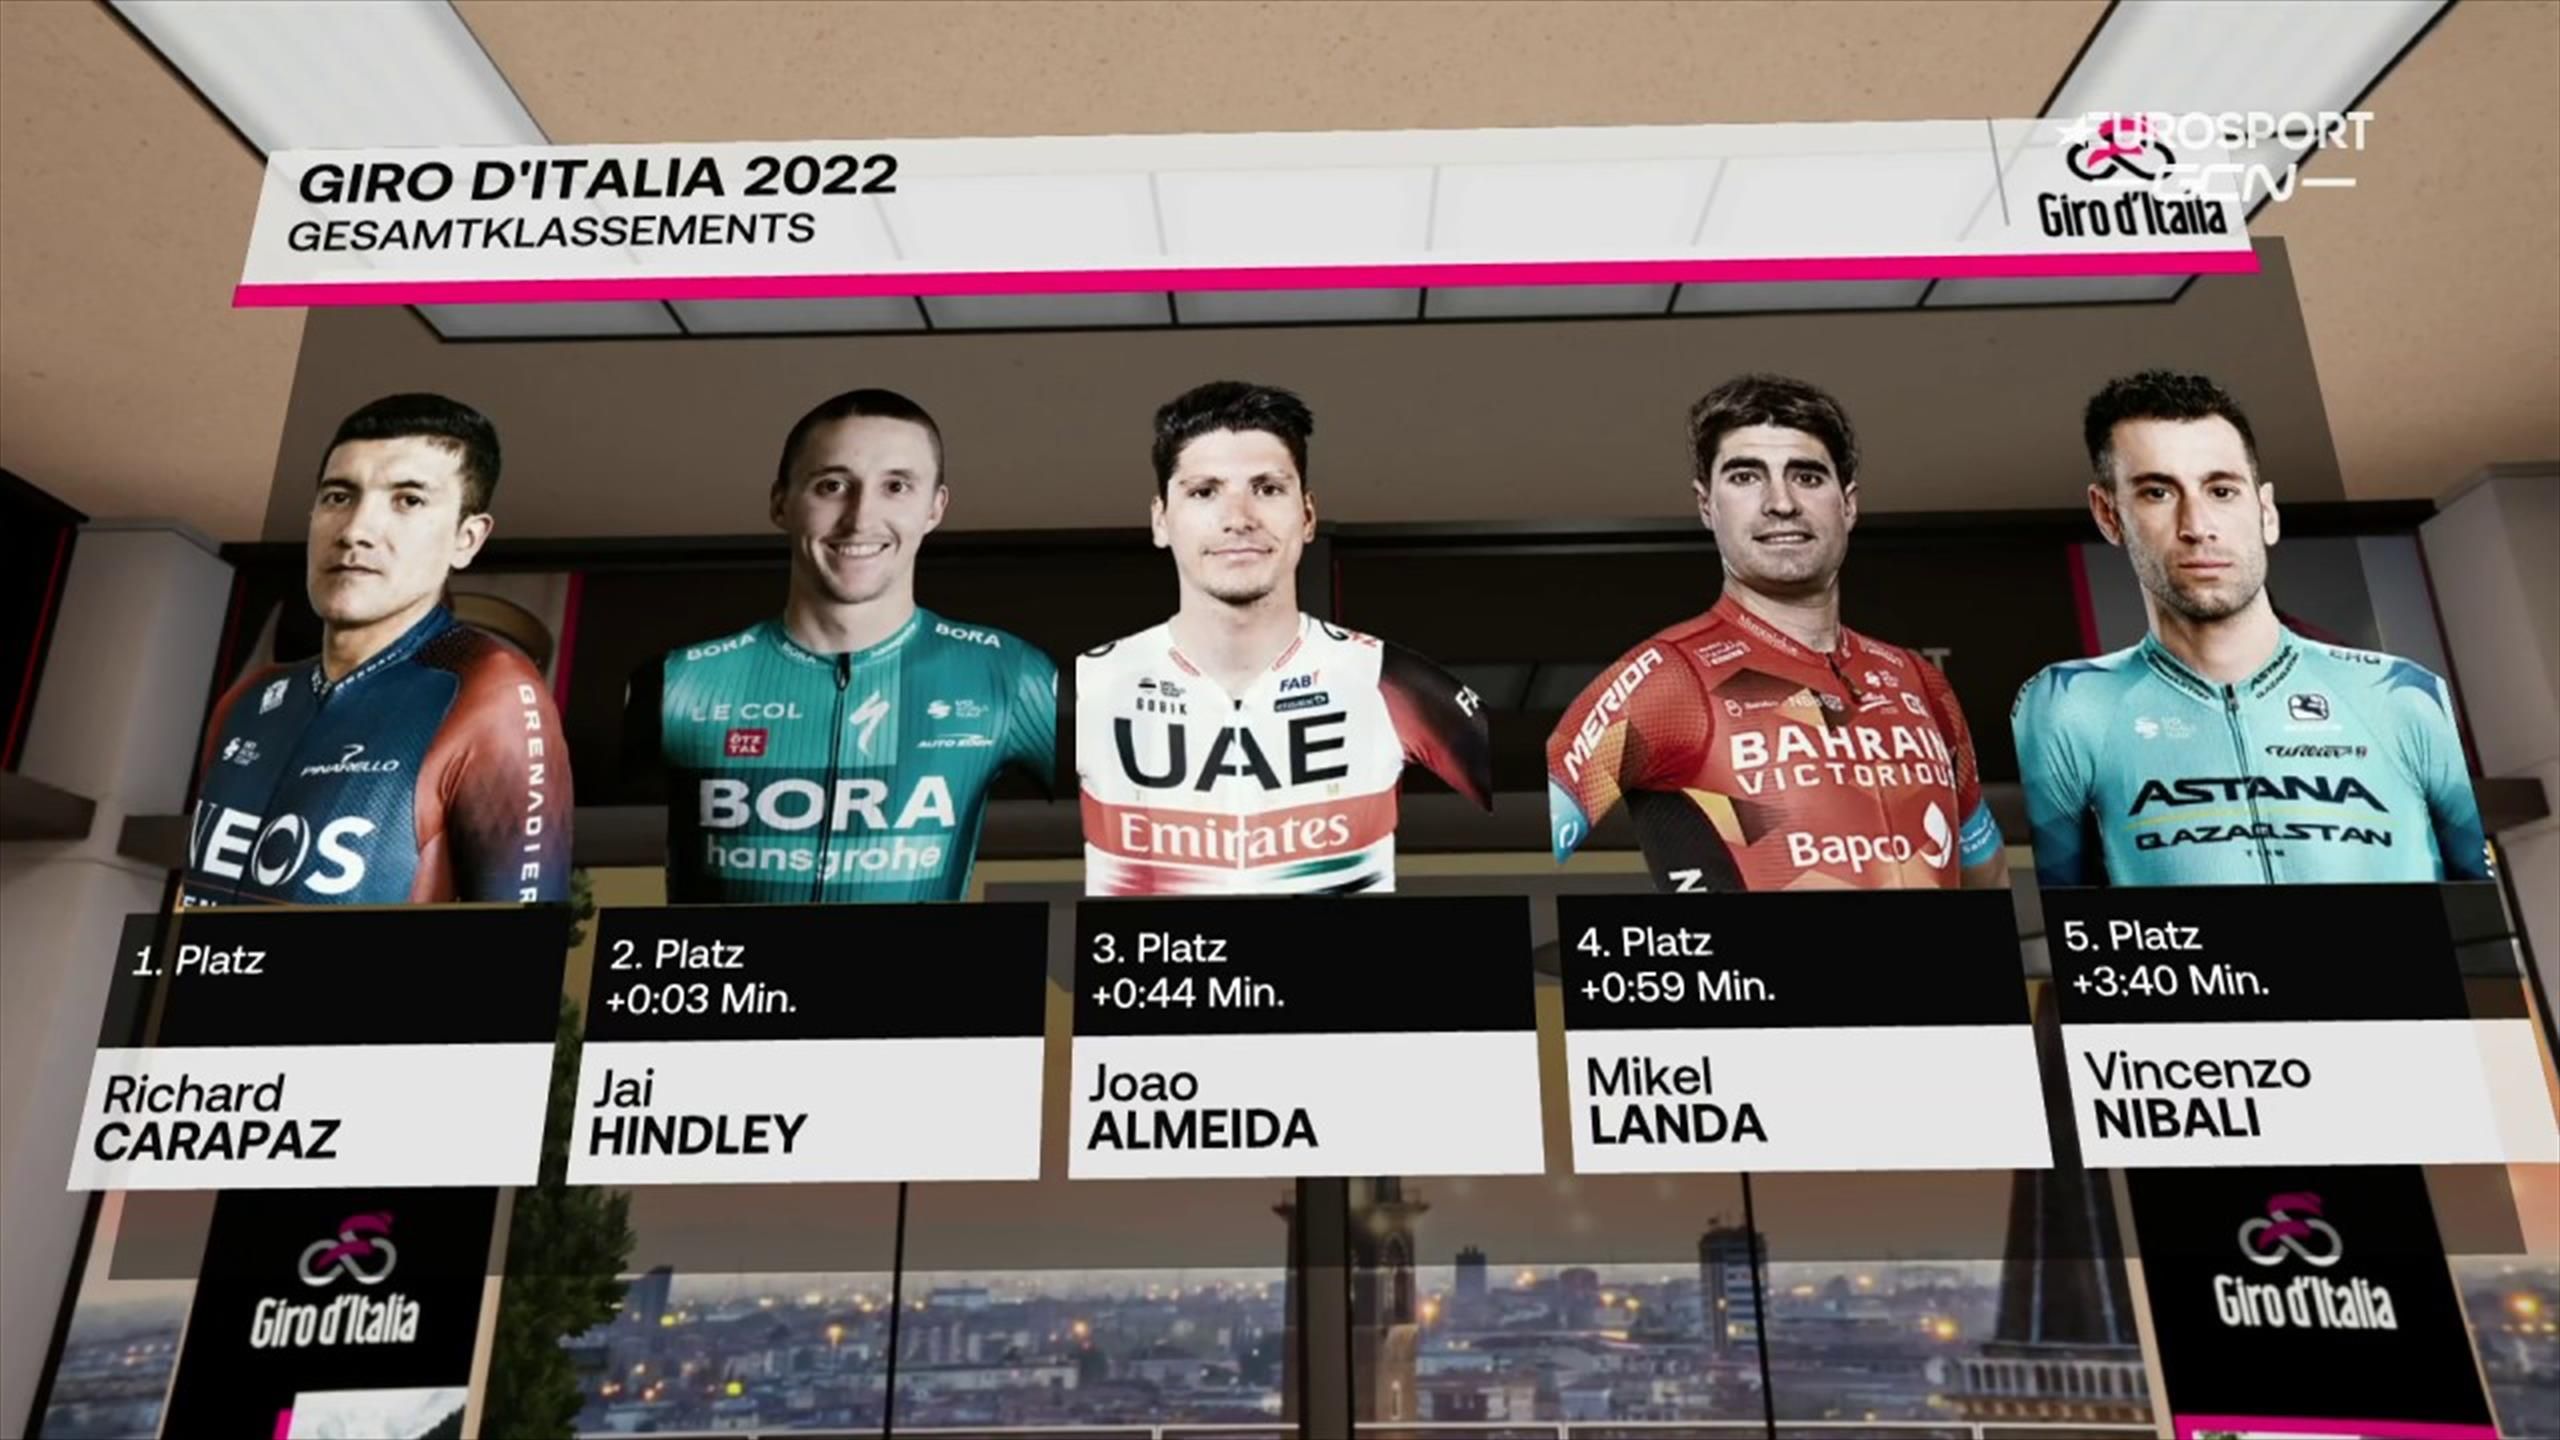 Giro dItalia 2022 Italien-Rundfahrt sorgt für Spannung